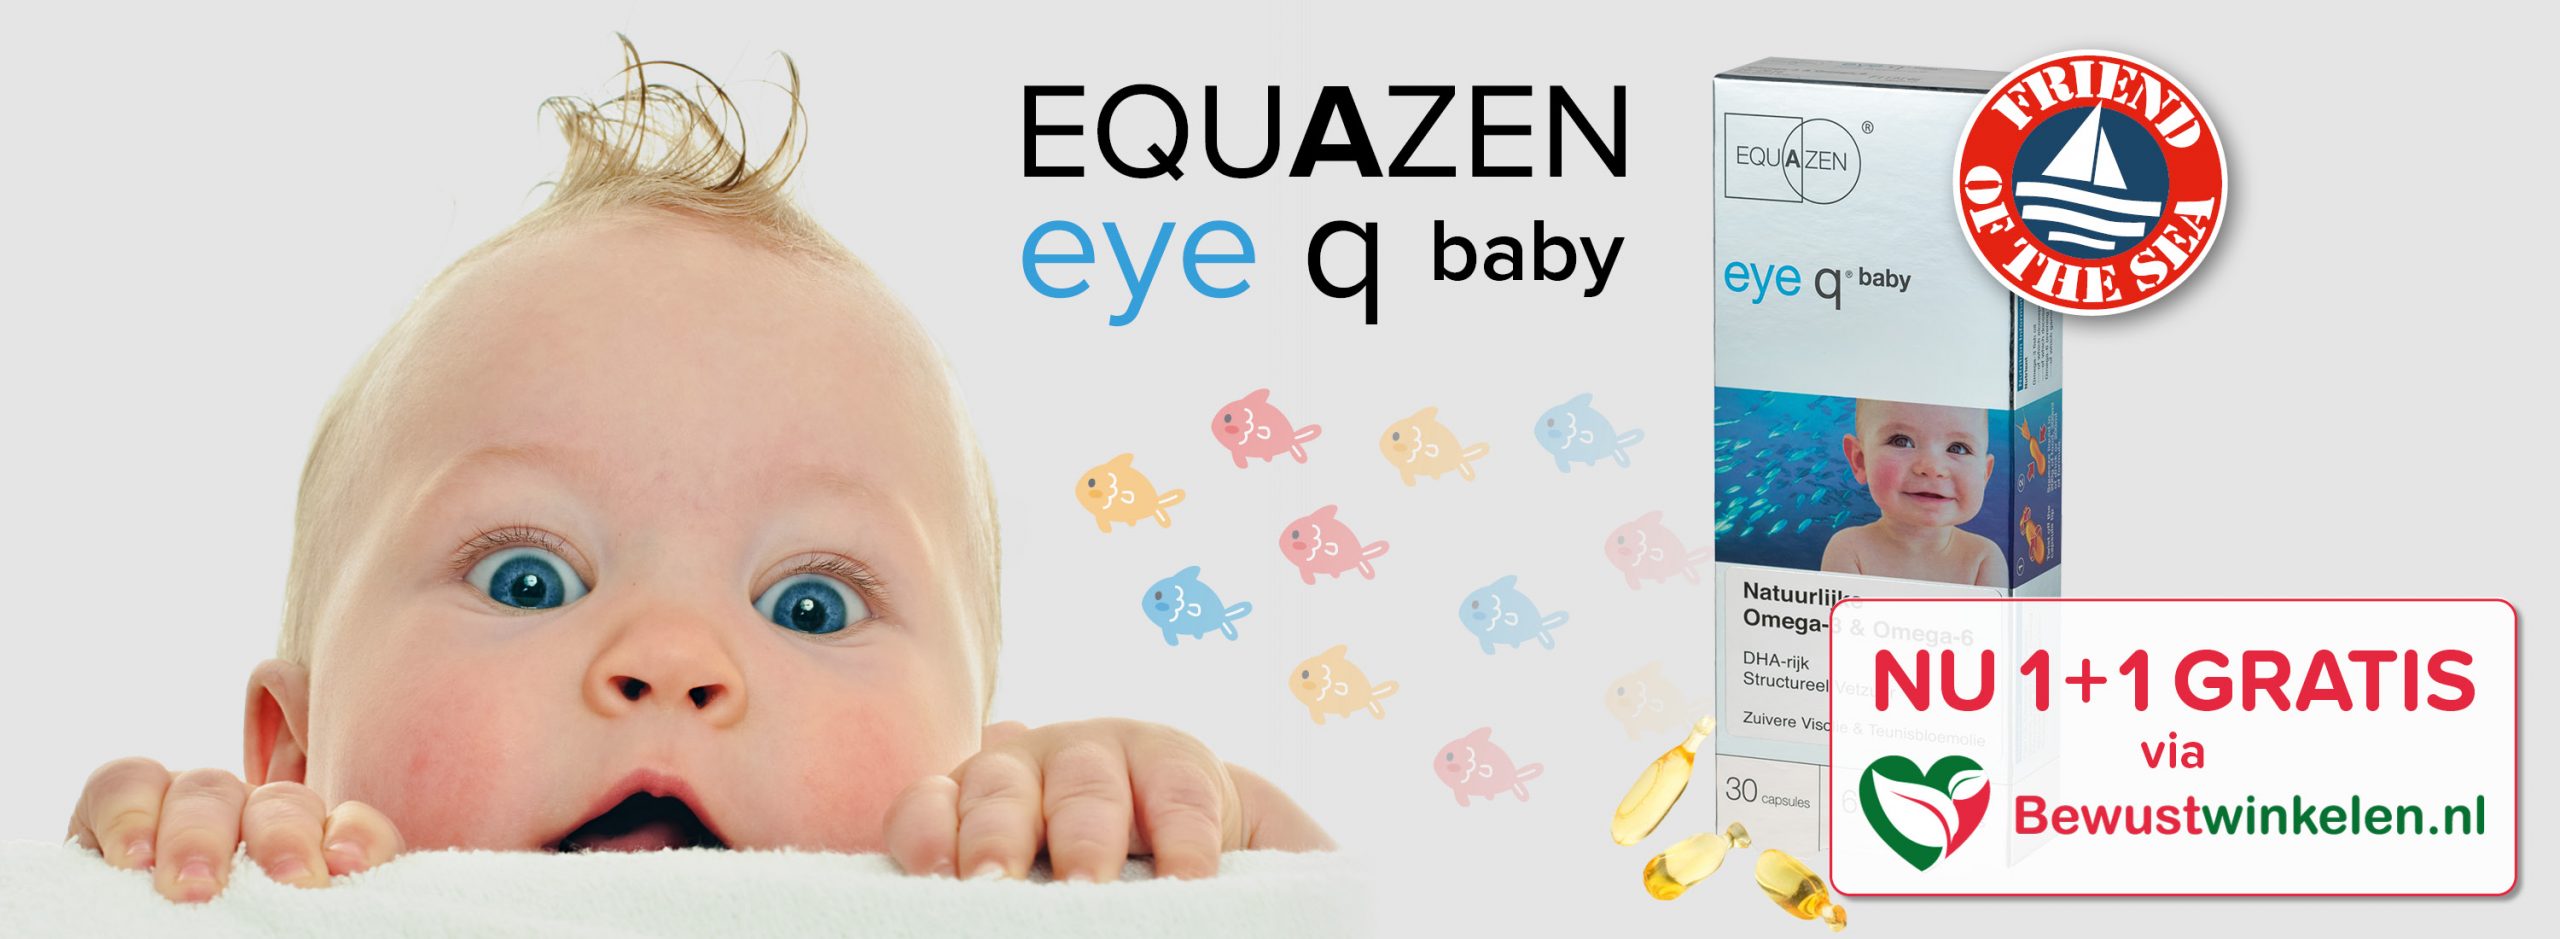 Eye q baby NU 1+1 gratis